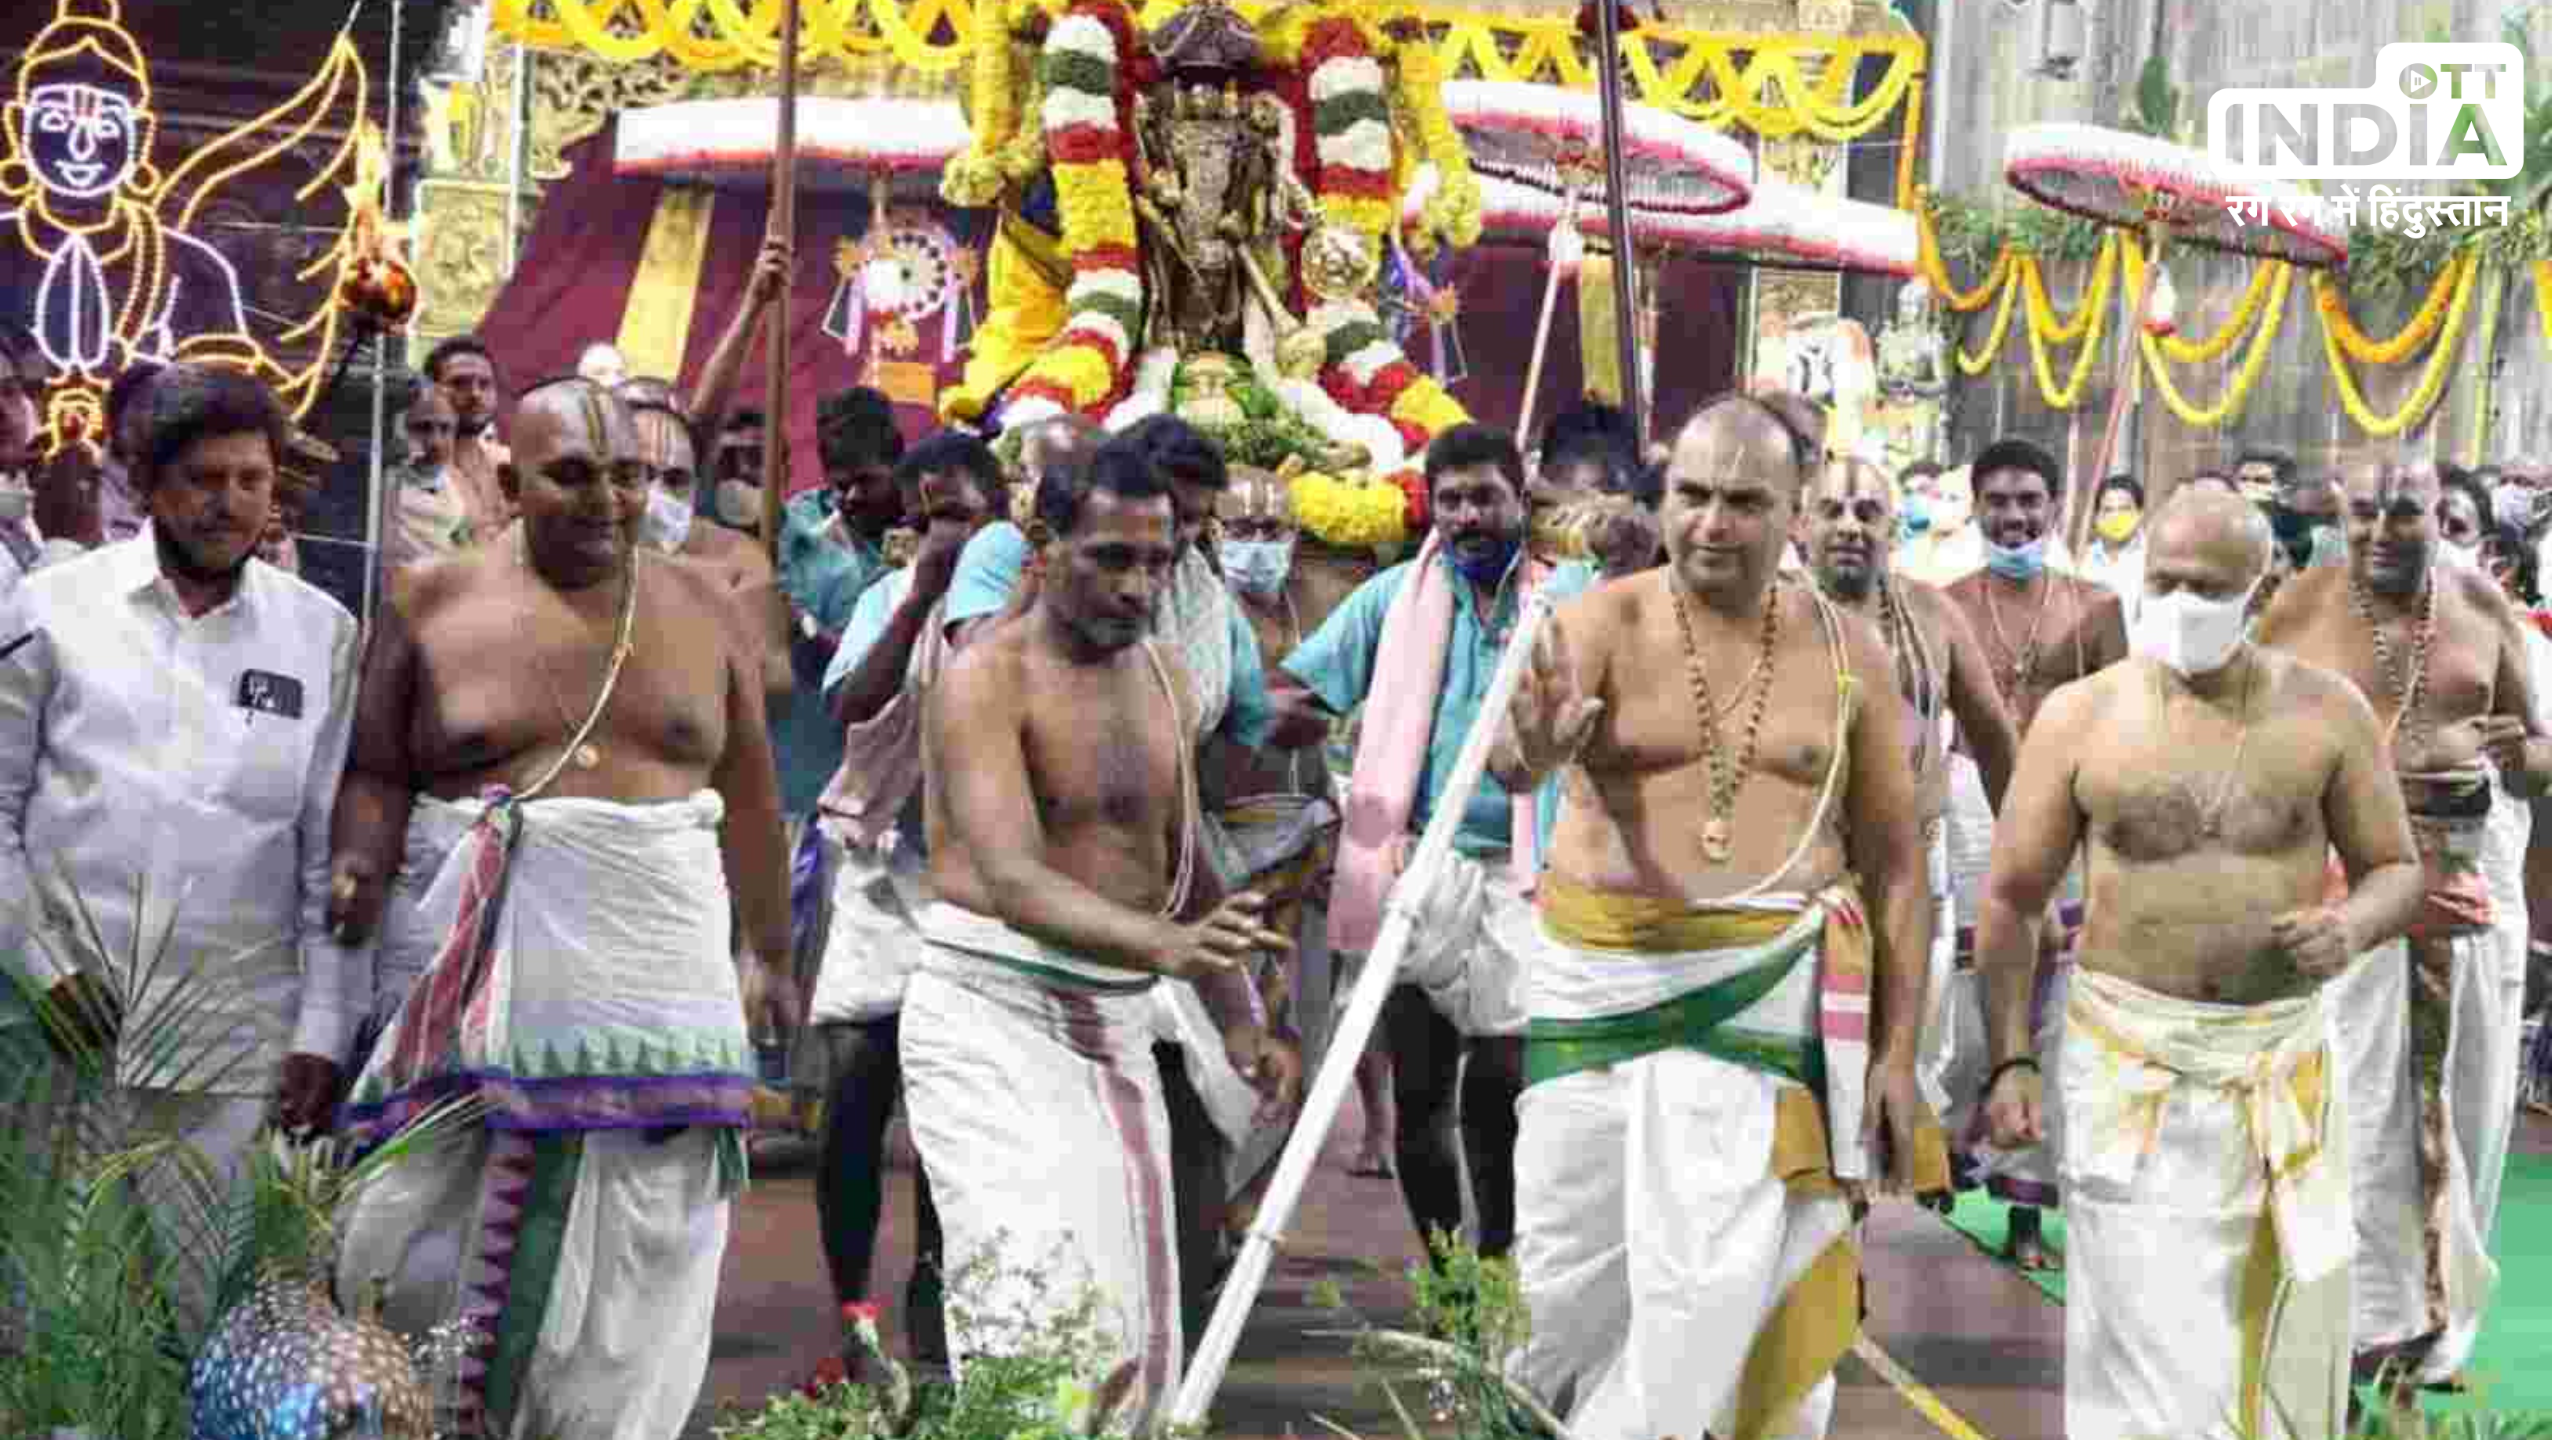 Paruveta Festival Andhra Pradesh: पारुवेता महोत्सव मछुवारों और समुद्र के बीच बंधन का है उत्सव, जानें इतिहास और महत्व